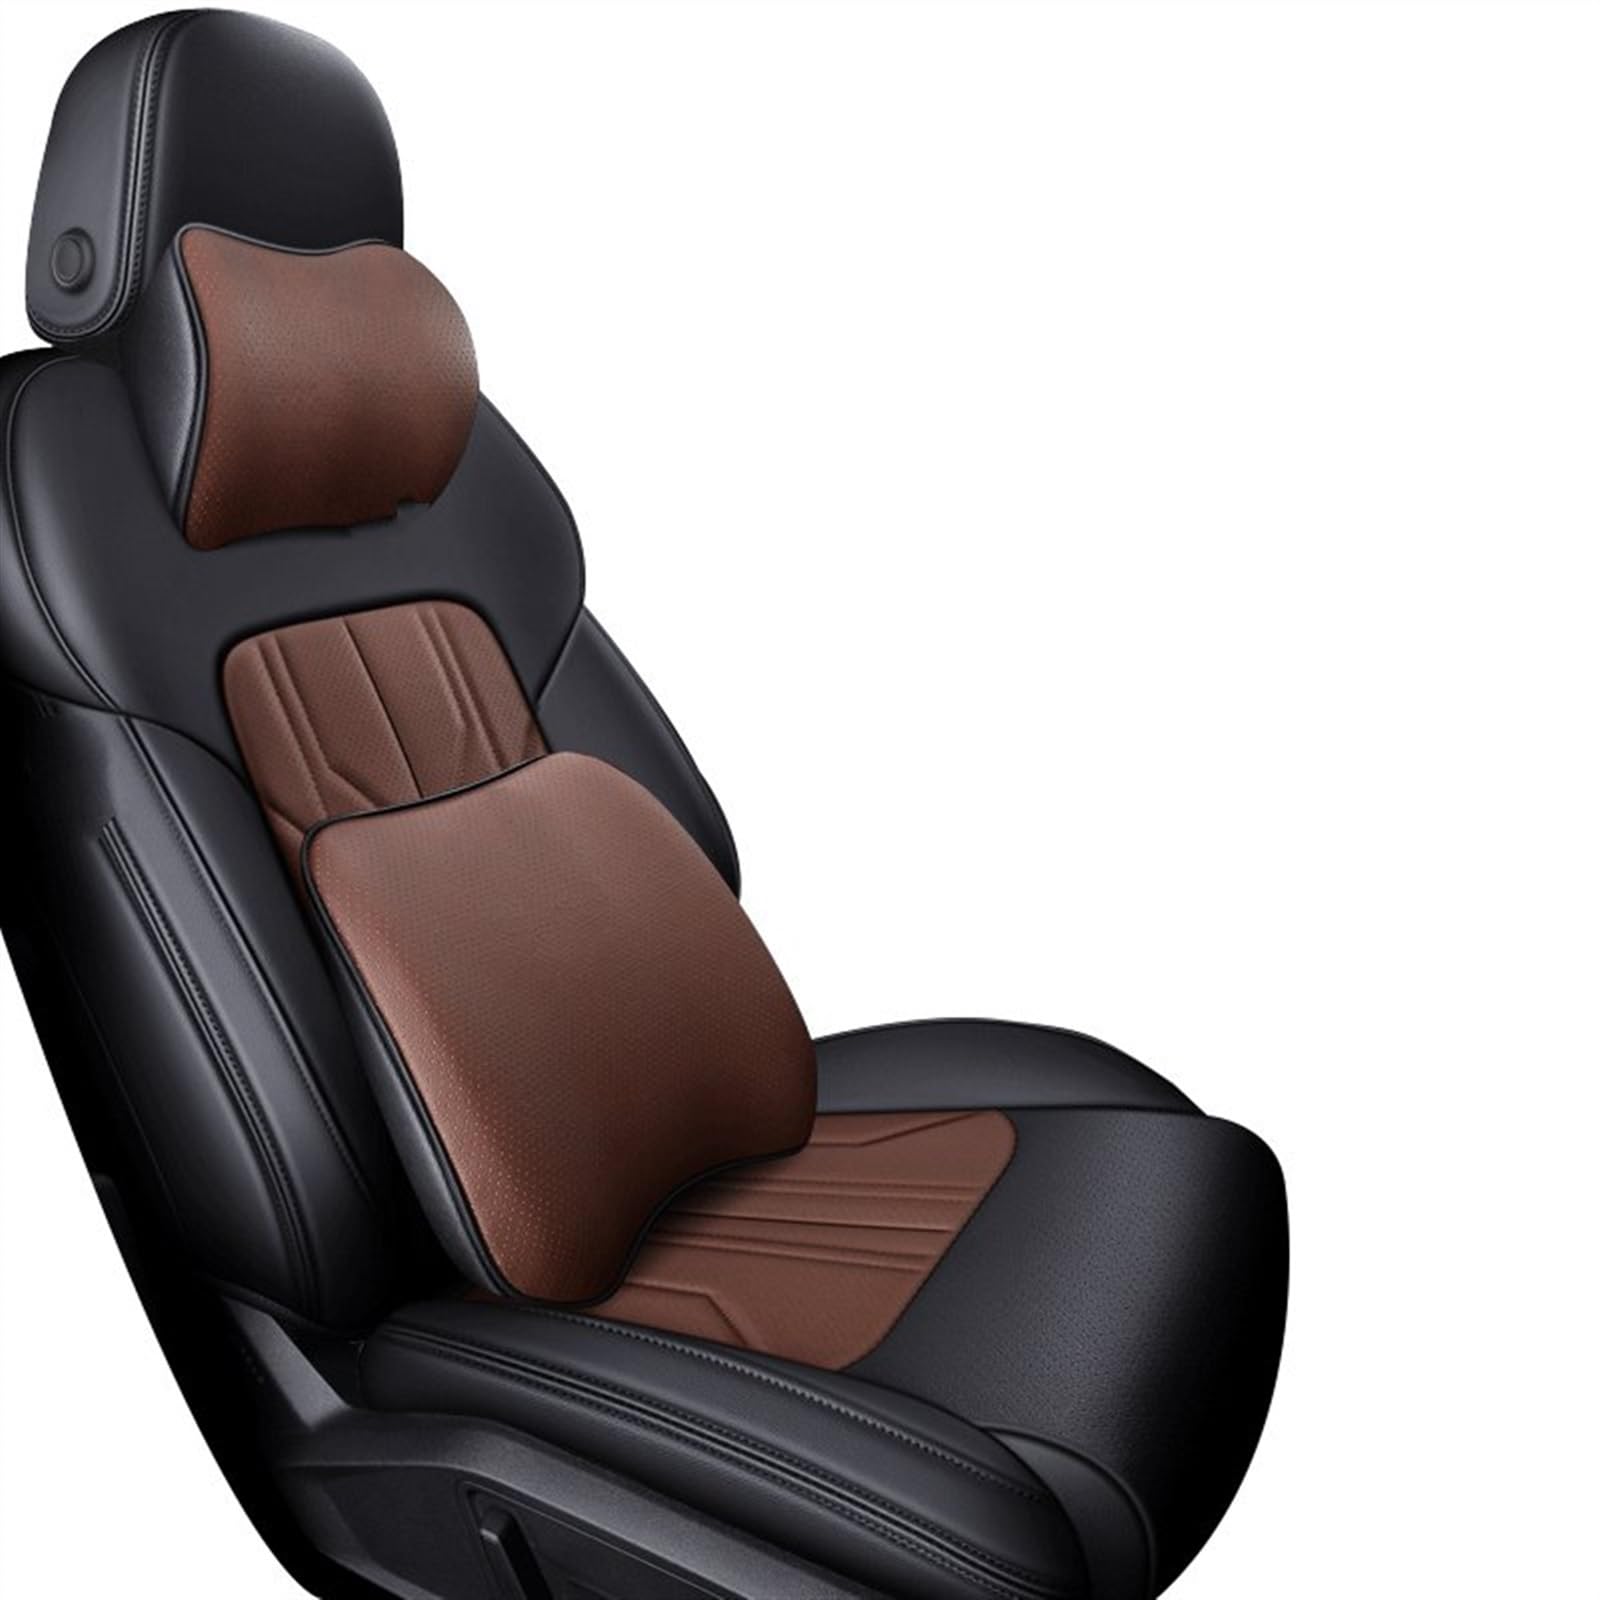 TATARENGS Automobilinnenraum Kompatibel Mit Infiniti Qx80 Qx70 Fx Ex Jx Qx50 Q70 Qx60 Q50 Qx30 Q30 Q60 Auto-Innensitzbezug-Schutz, Vier Jahreszeiten-Sitzbezug(B-Bring pillow,3) von TATARENGS